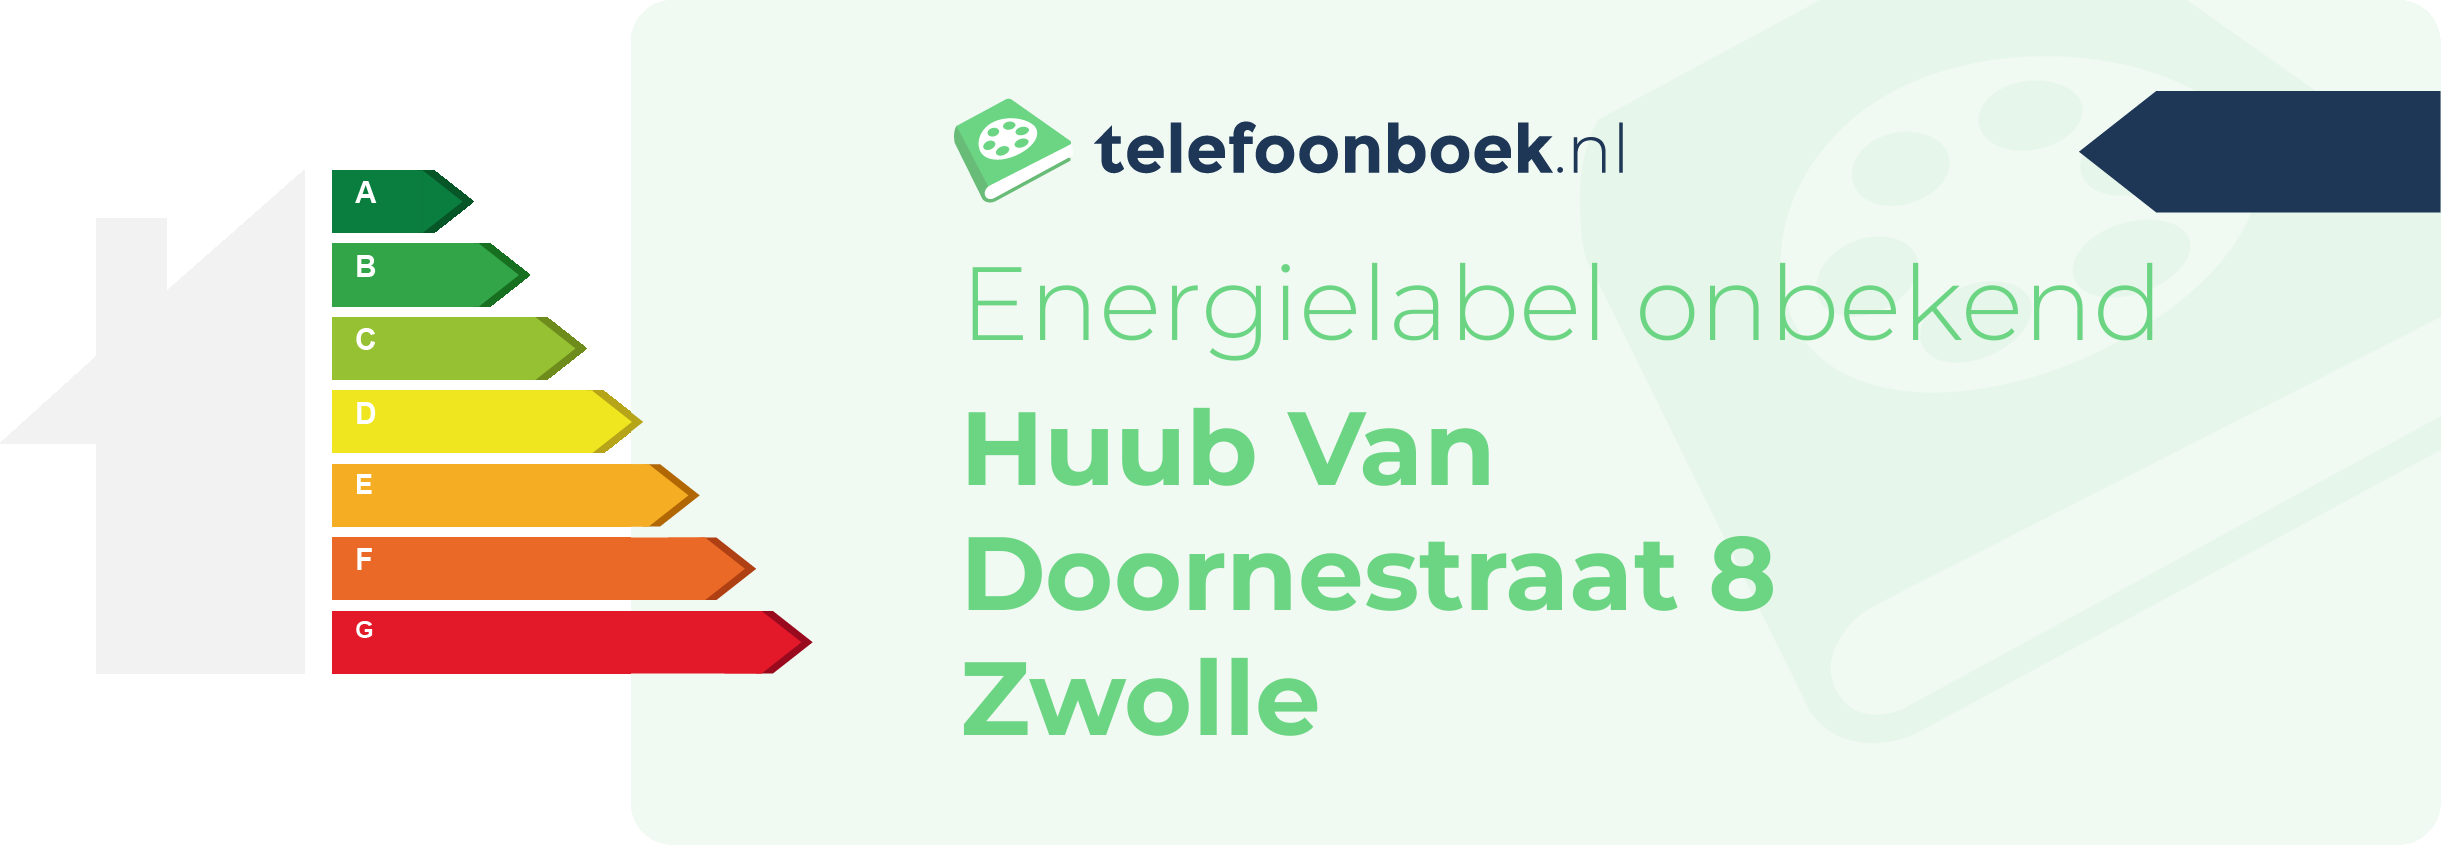 Energielabel Huub Van Doornestraat 8 Zwolle